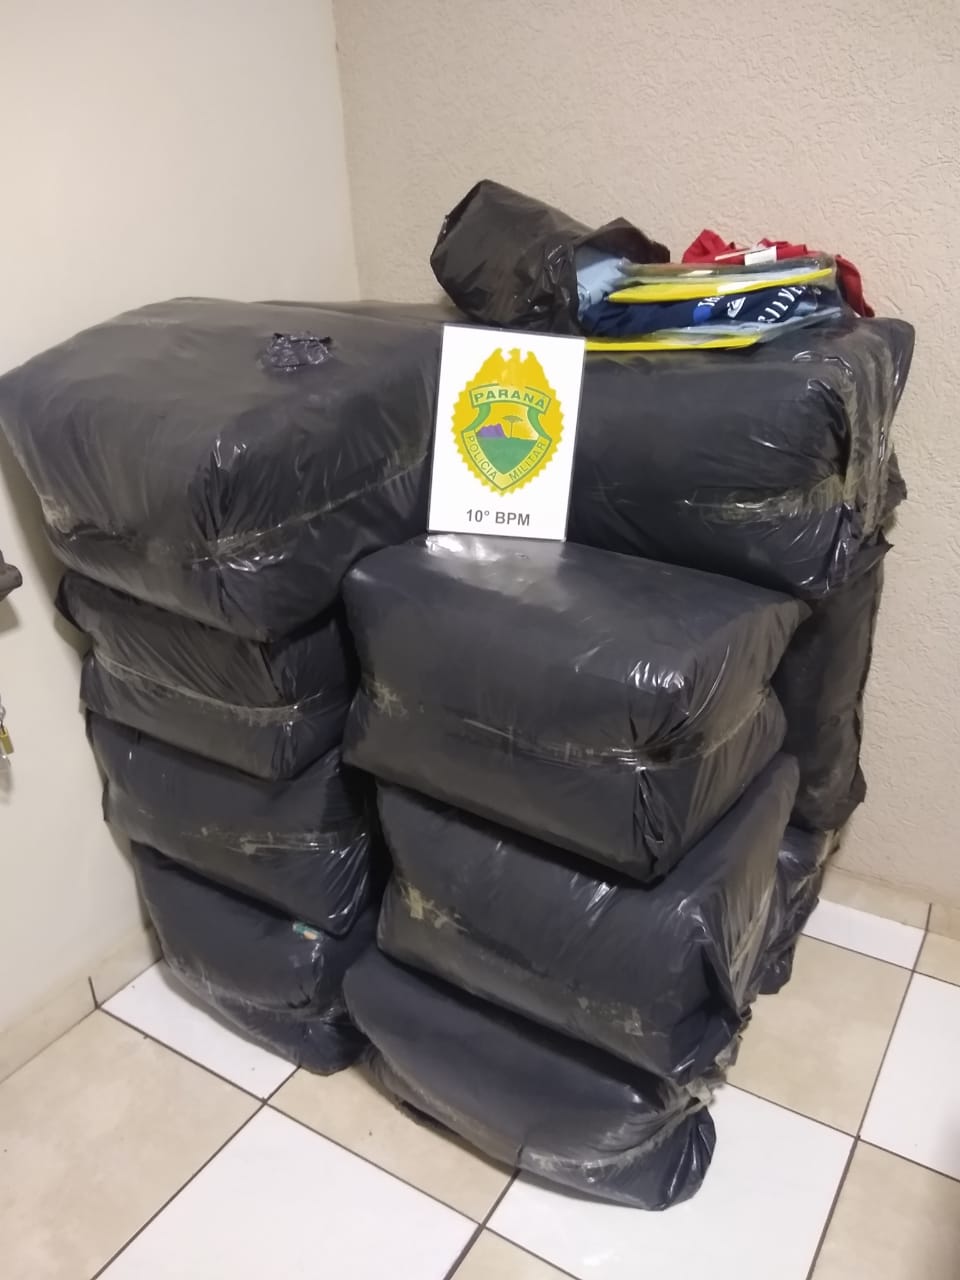 Imagem referente a PM de Apucarana (PR) descobre paradeiro de autores de roubo à confecção e recupera 14 fardos de roupas